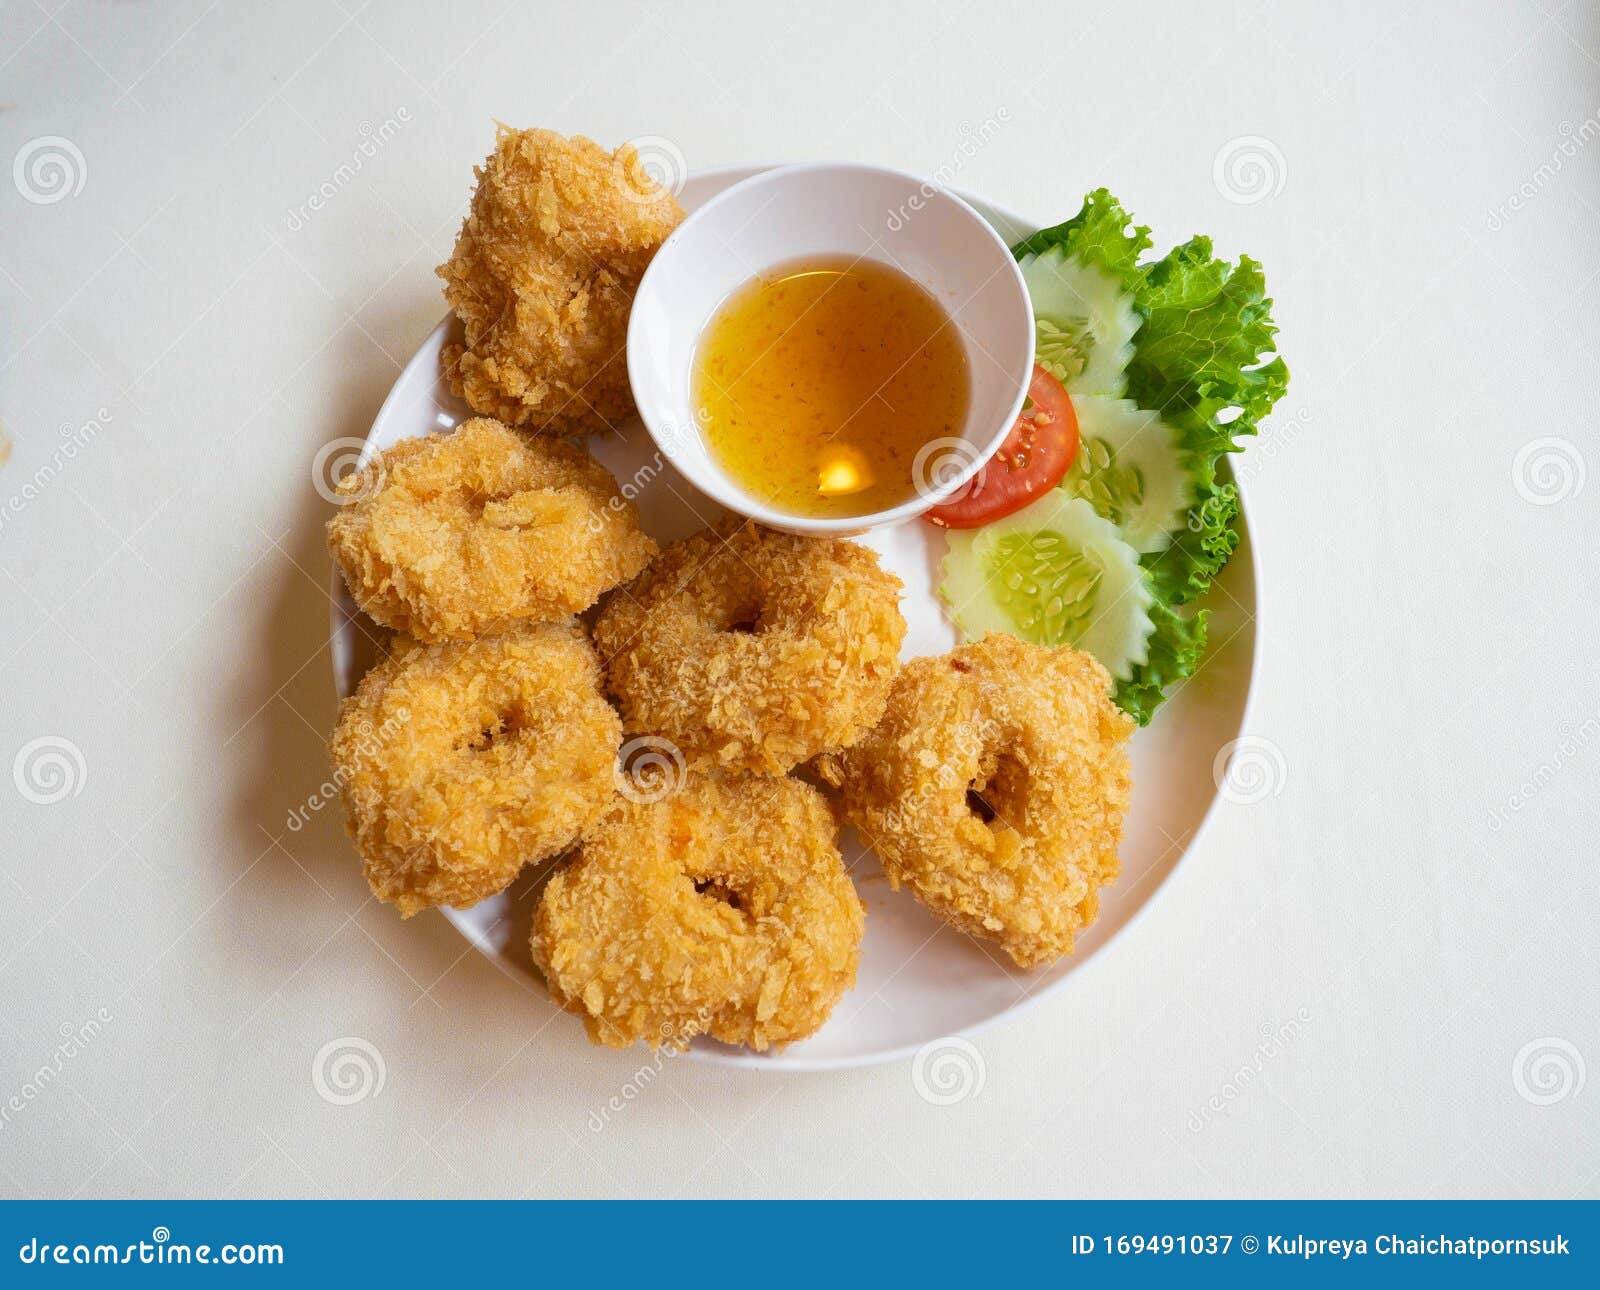 Coconut Shrimp Cakes Recipe | Easy Fried Shrimp Appetizer